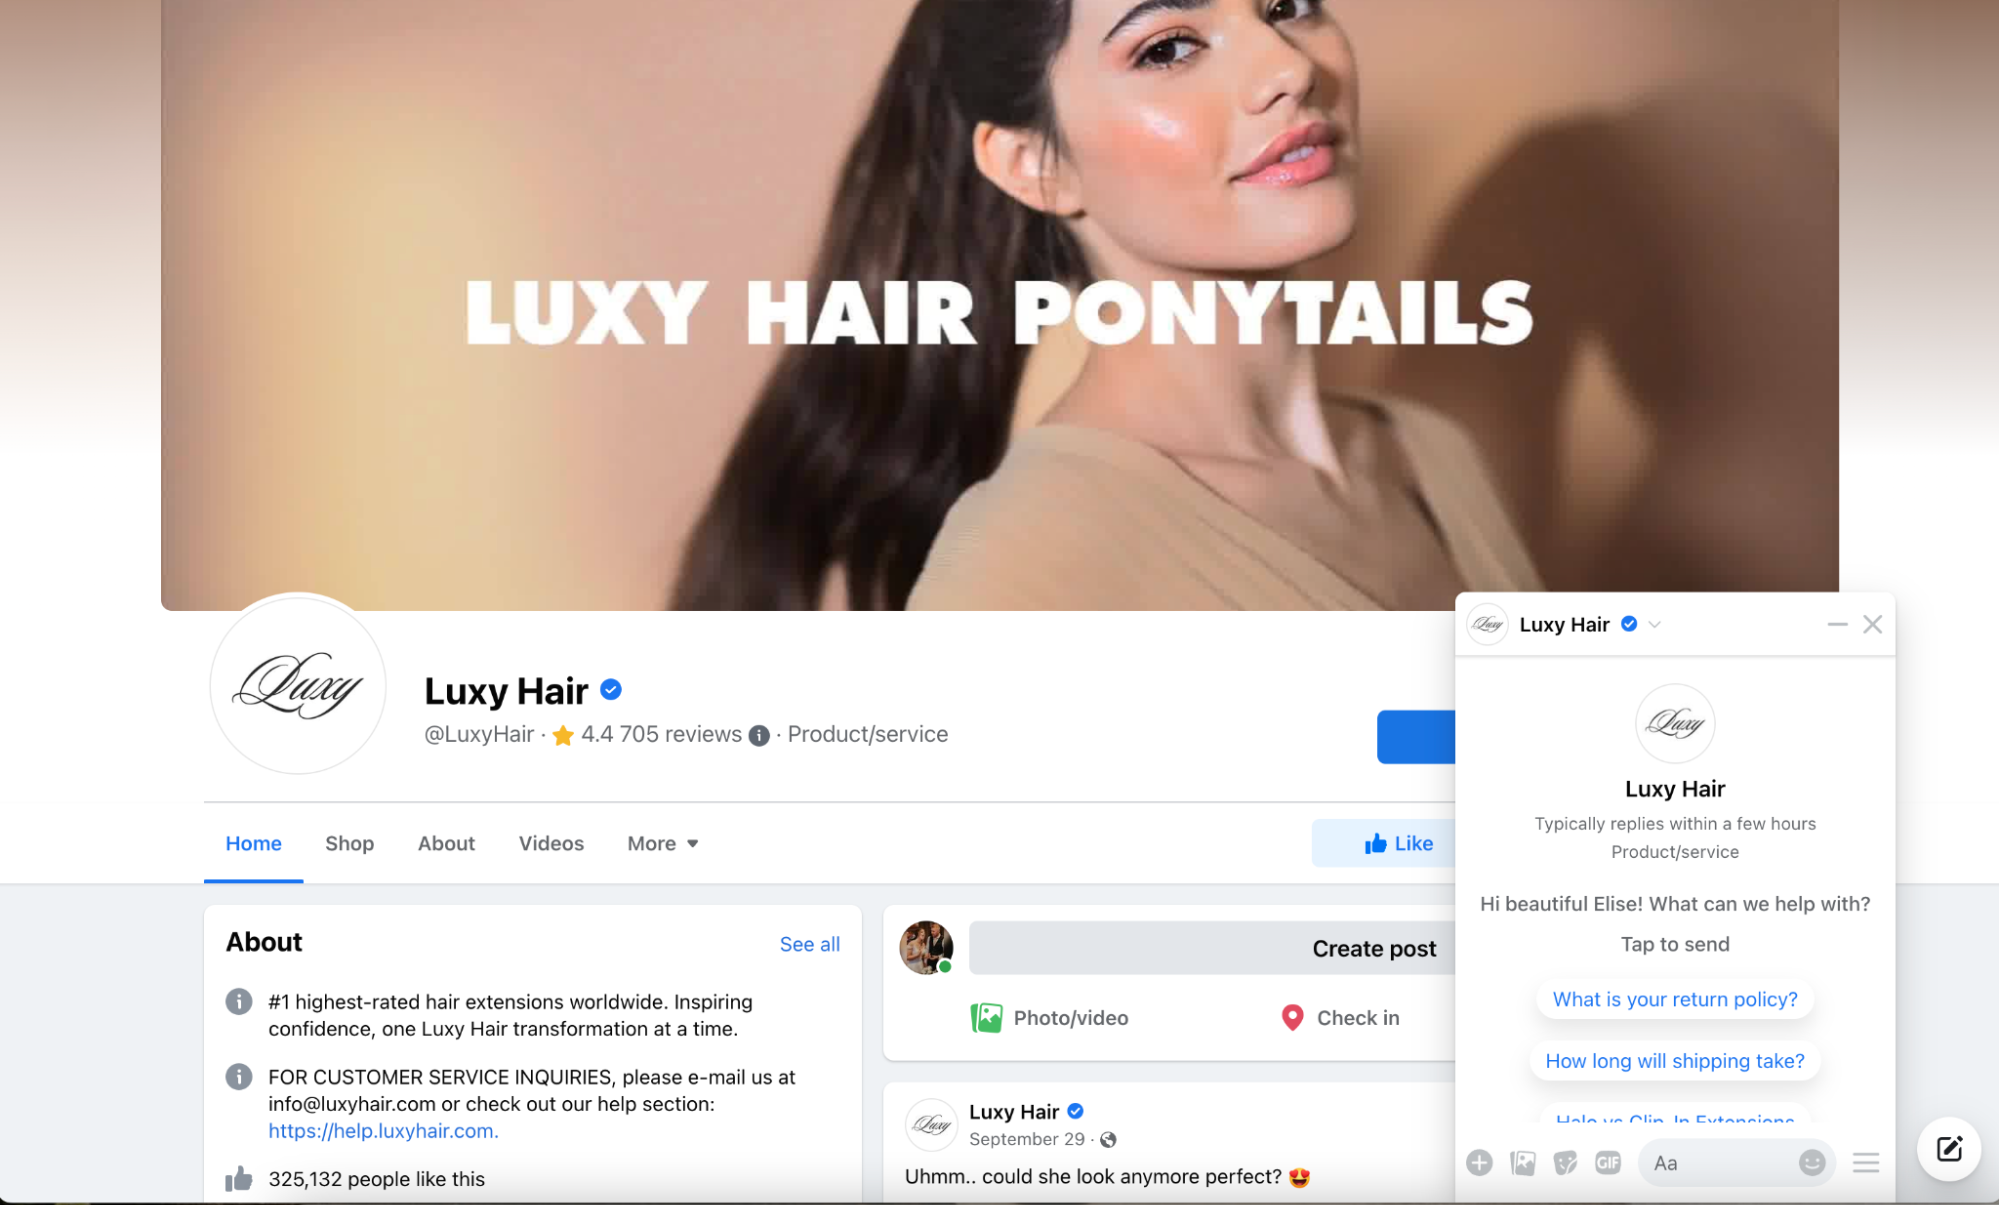 Luxy Hair 的 Facebook 页面上有一个带有以下提示的小弹出框：“你们的退货政策是什么？”  和“运送需要多长时间？”